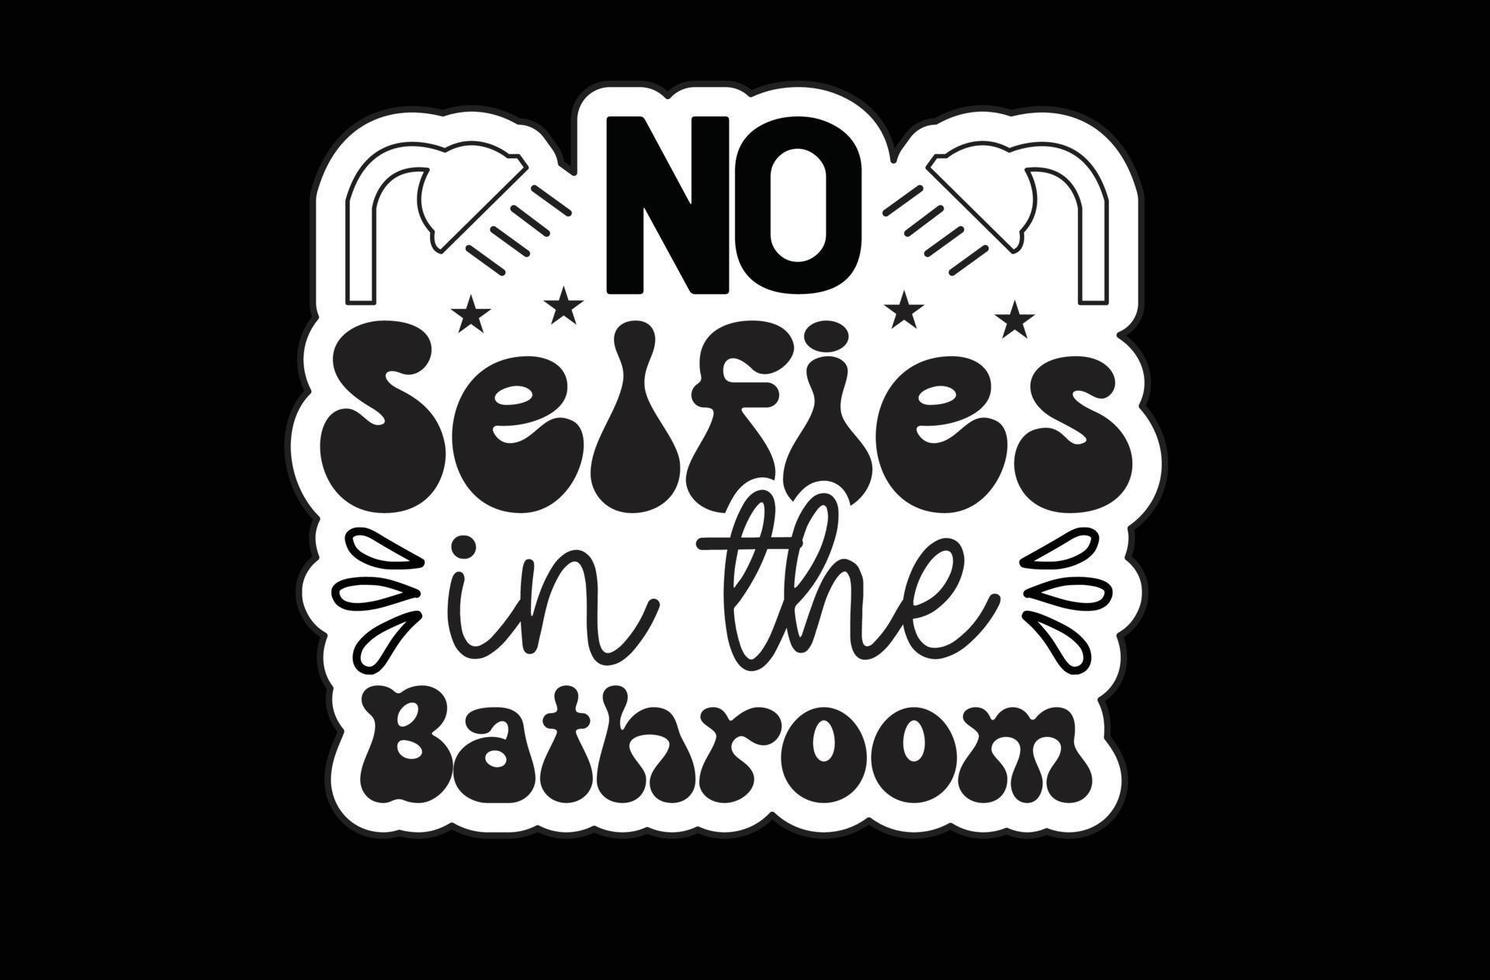 Nee selfies in de badkamer SVG sticker ontwerp vector